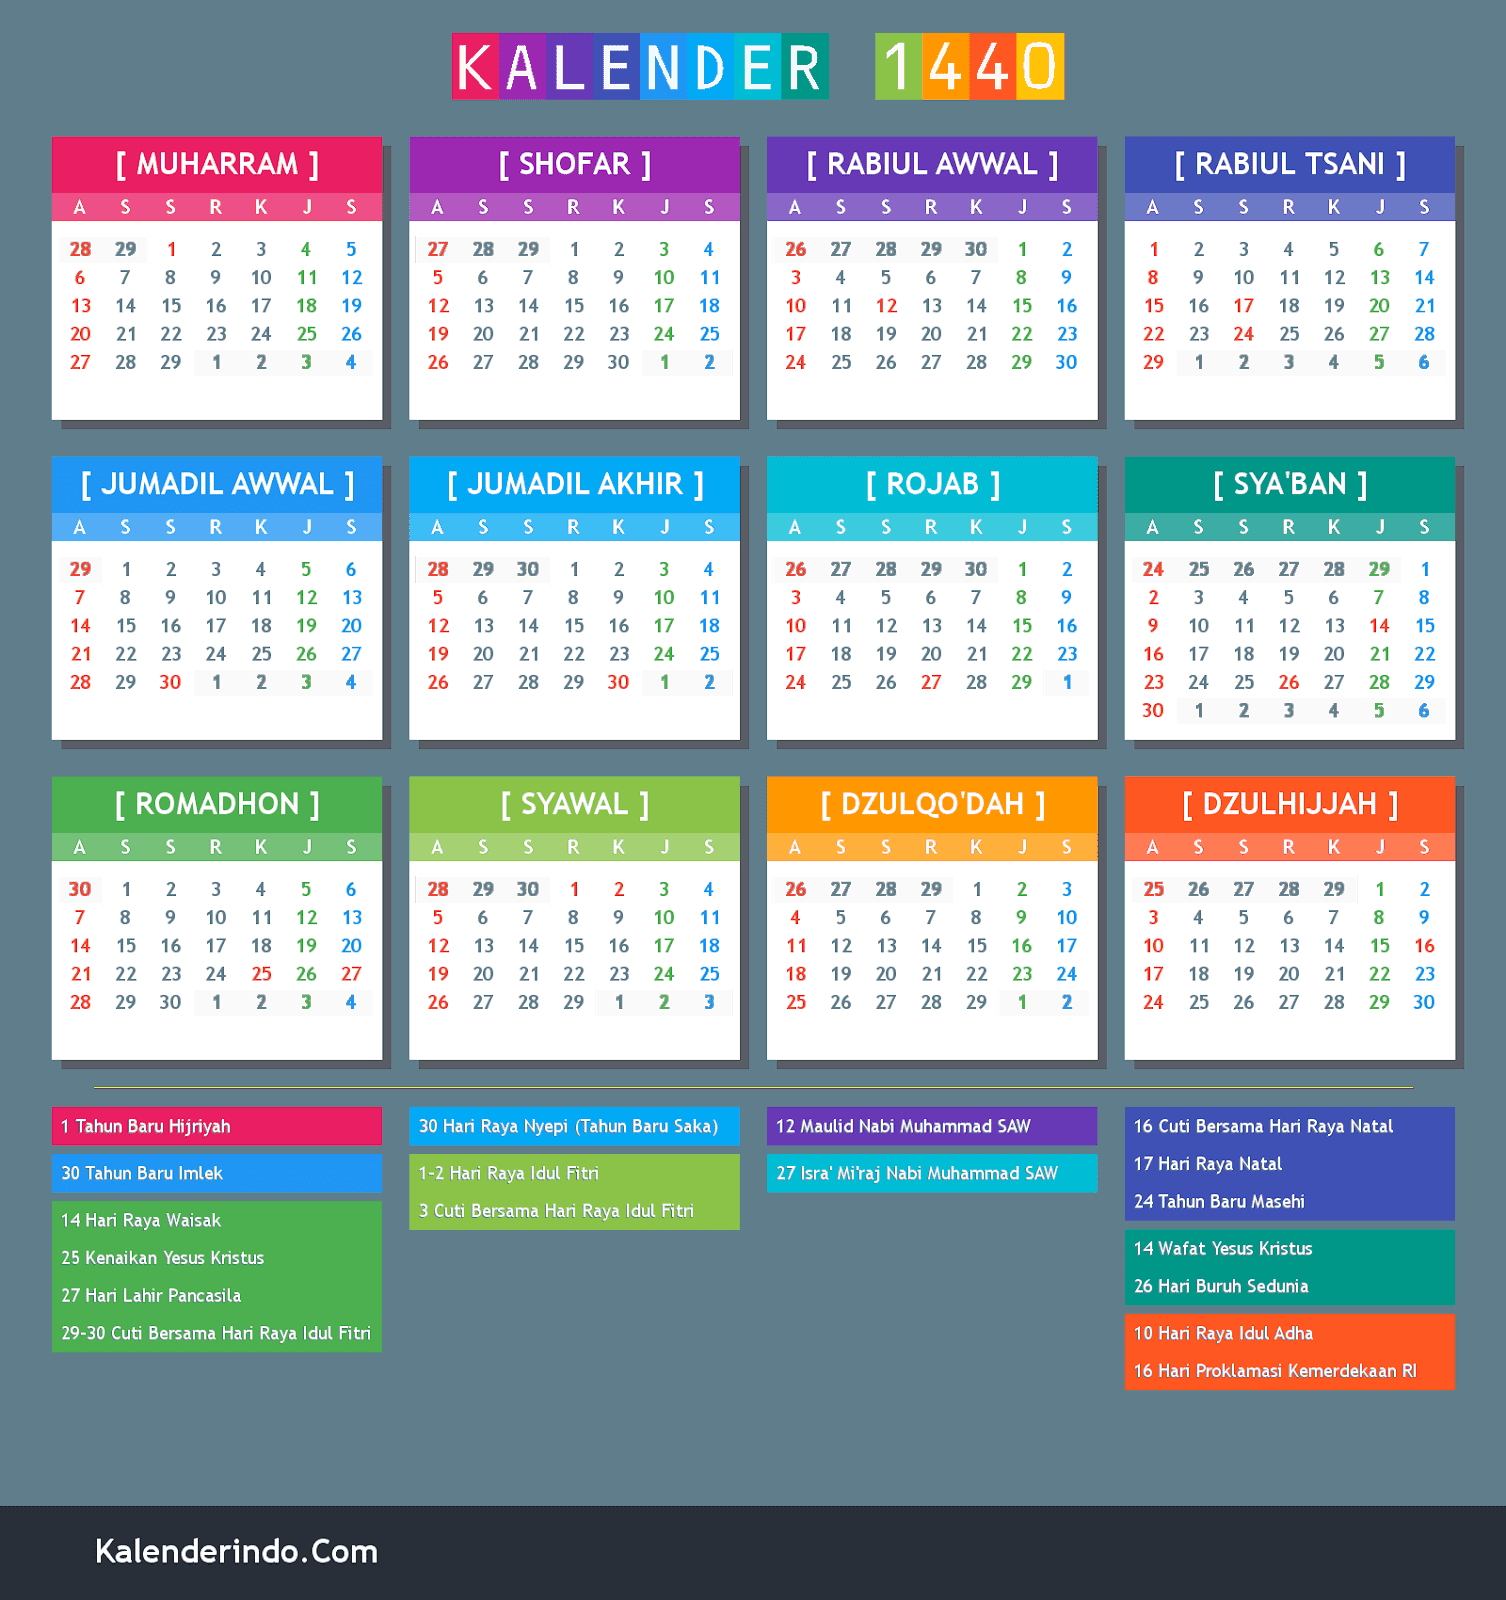 Kalender Islam 2019